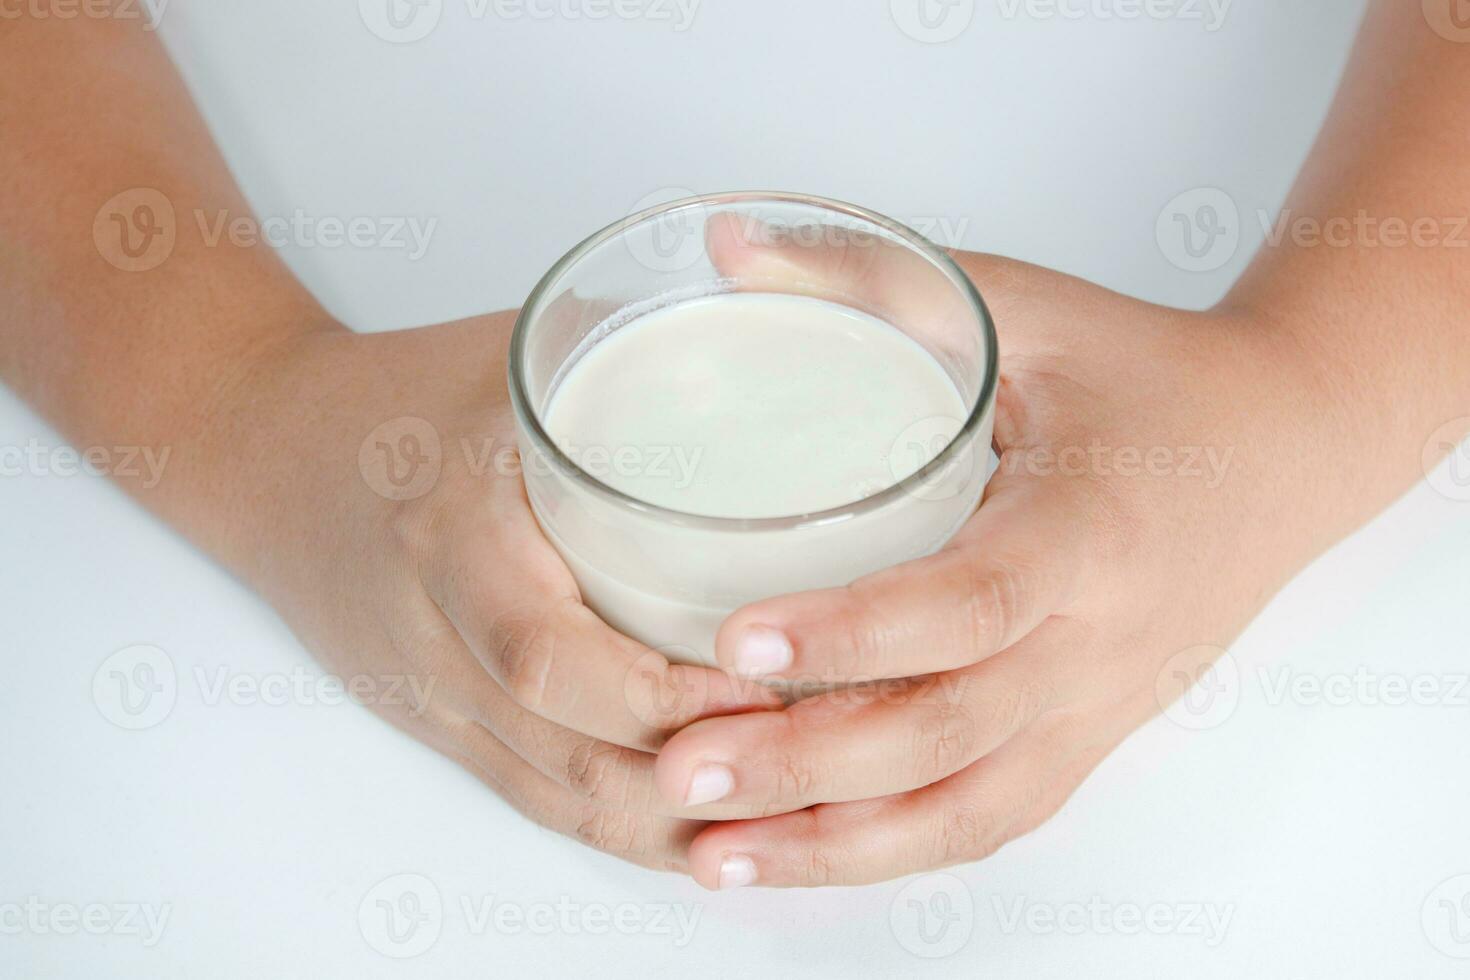 dik jongen Holding een vol glas van melk. kinderen zijn drinken melk. de concept van gezond aan het eten het is gunstig voor de groei van kinderen. foto